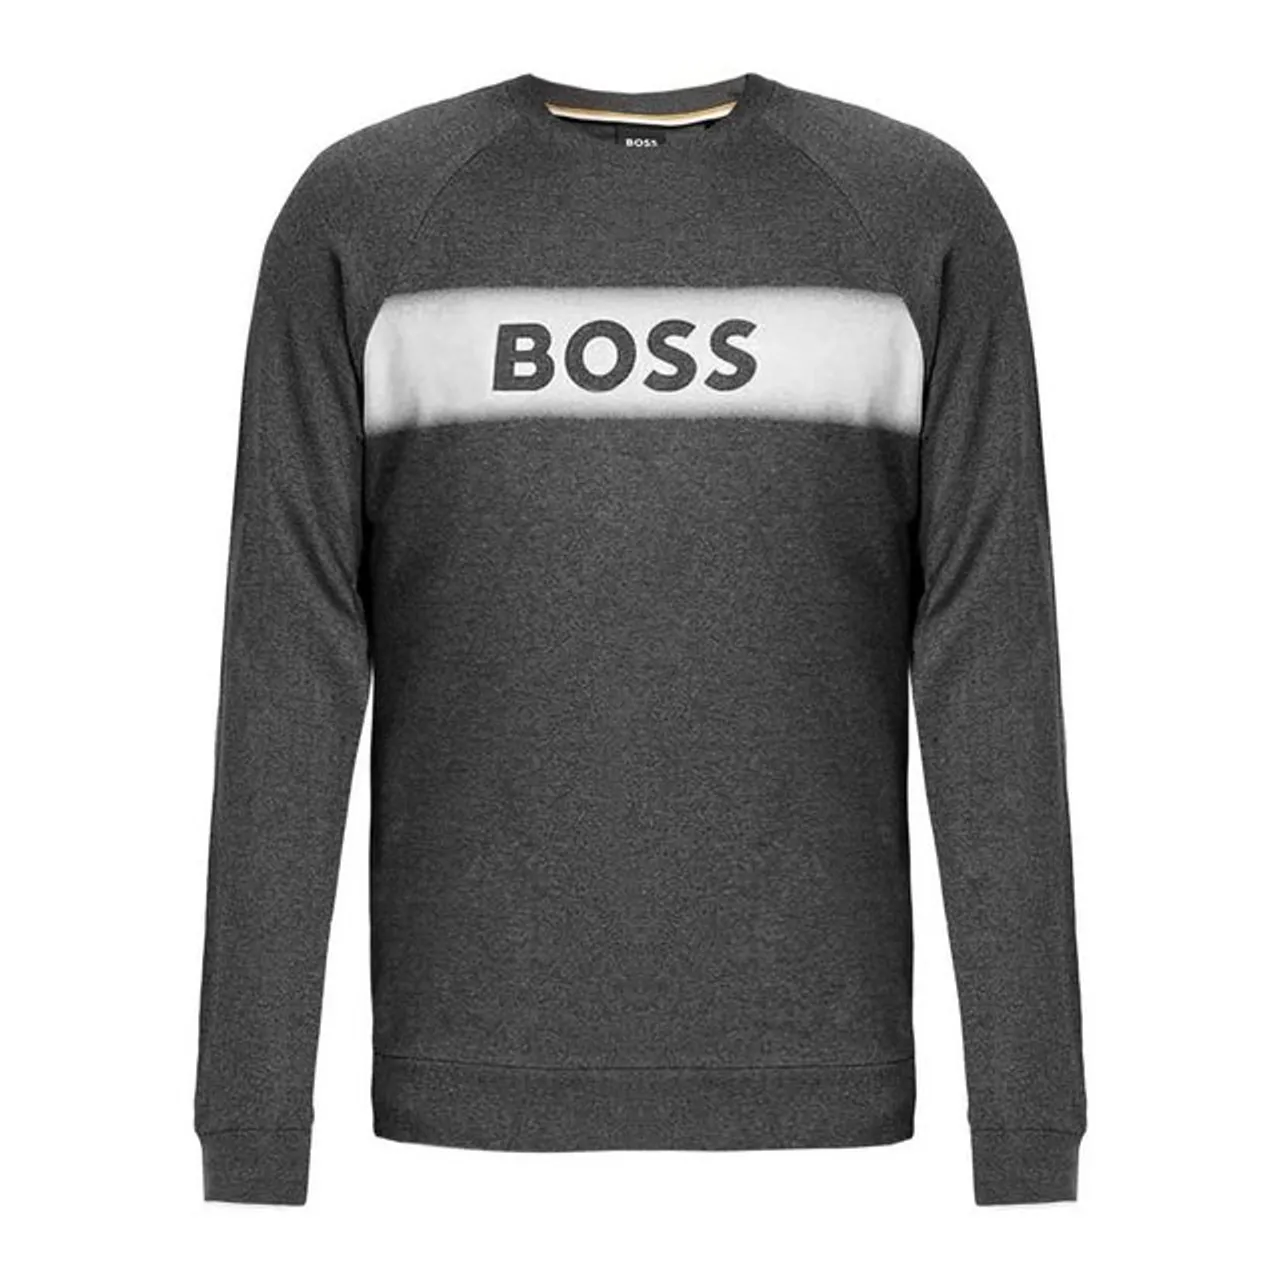 BOSS Sweatshirt Authentic Sweatshirt nachhaltig, weich